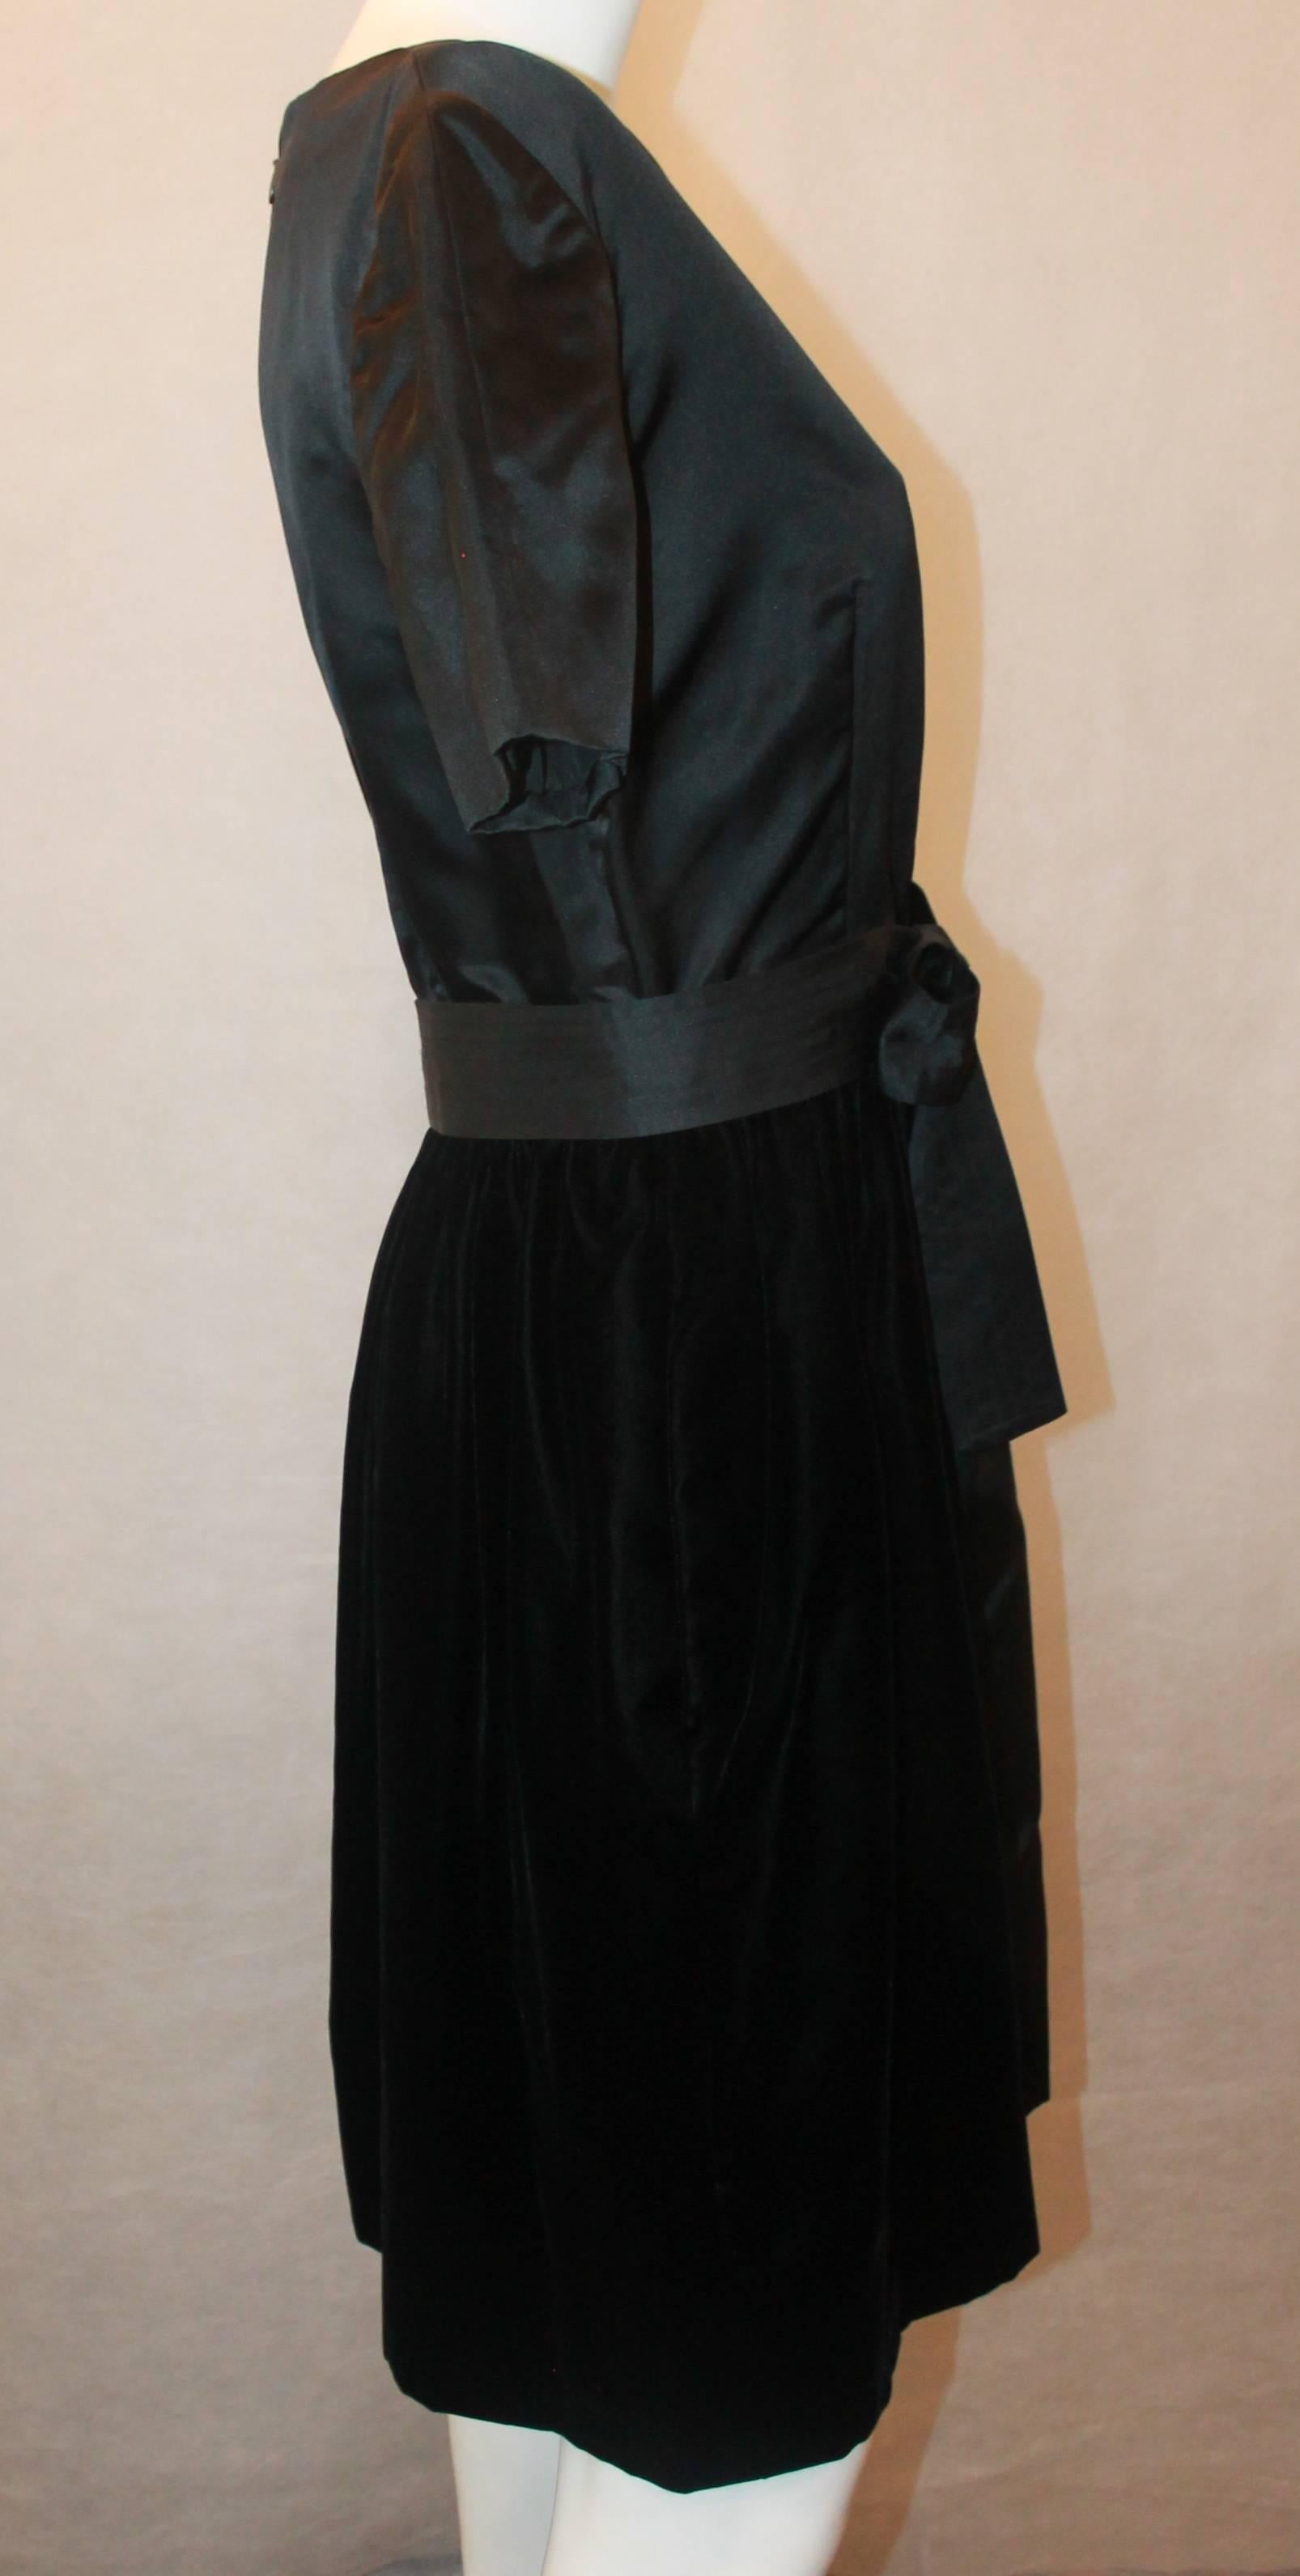 Women's Bills Blass 1970's Vintage Black Velvet & Satin Short Sleeve Dress - 8